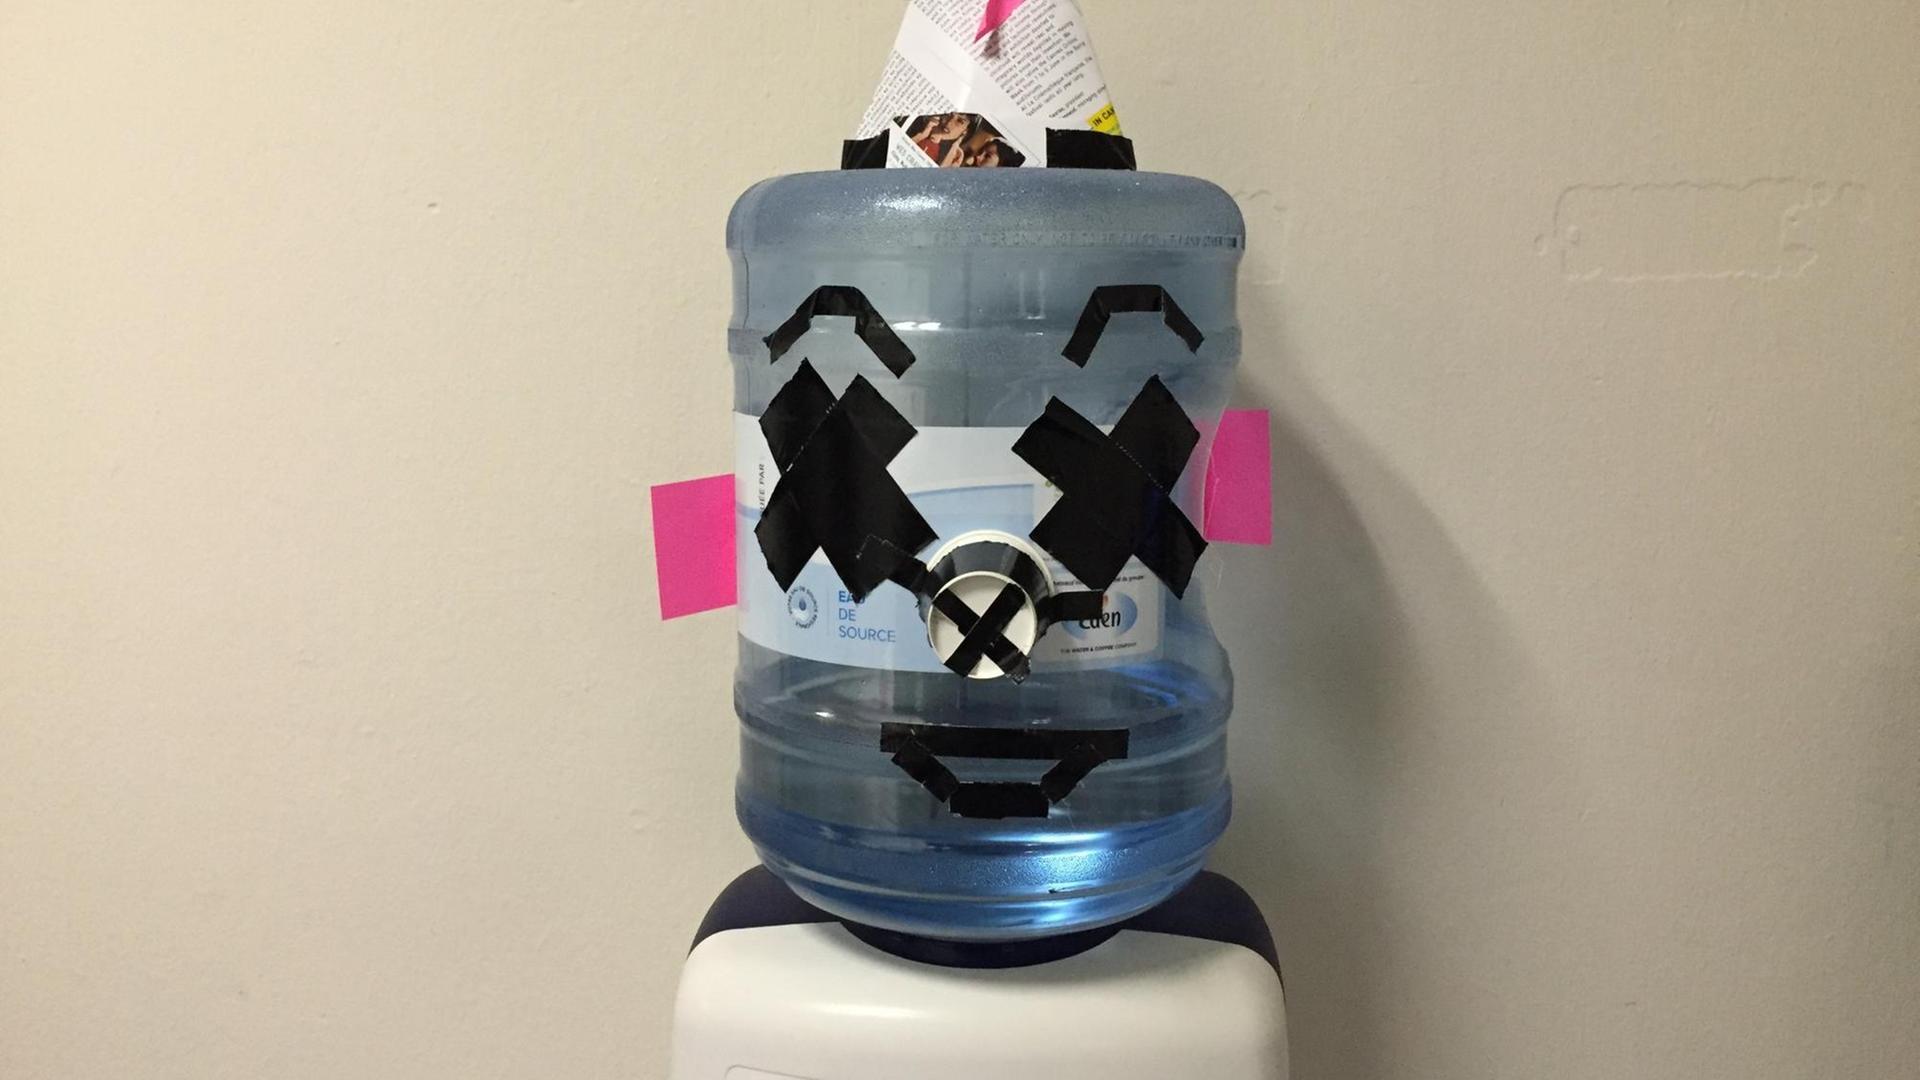 Bild von einem Wasserspender, der mit Klebestreifen und einem Papierhütchen aus Zeitung aussieht wie ein Kopf